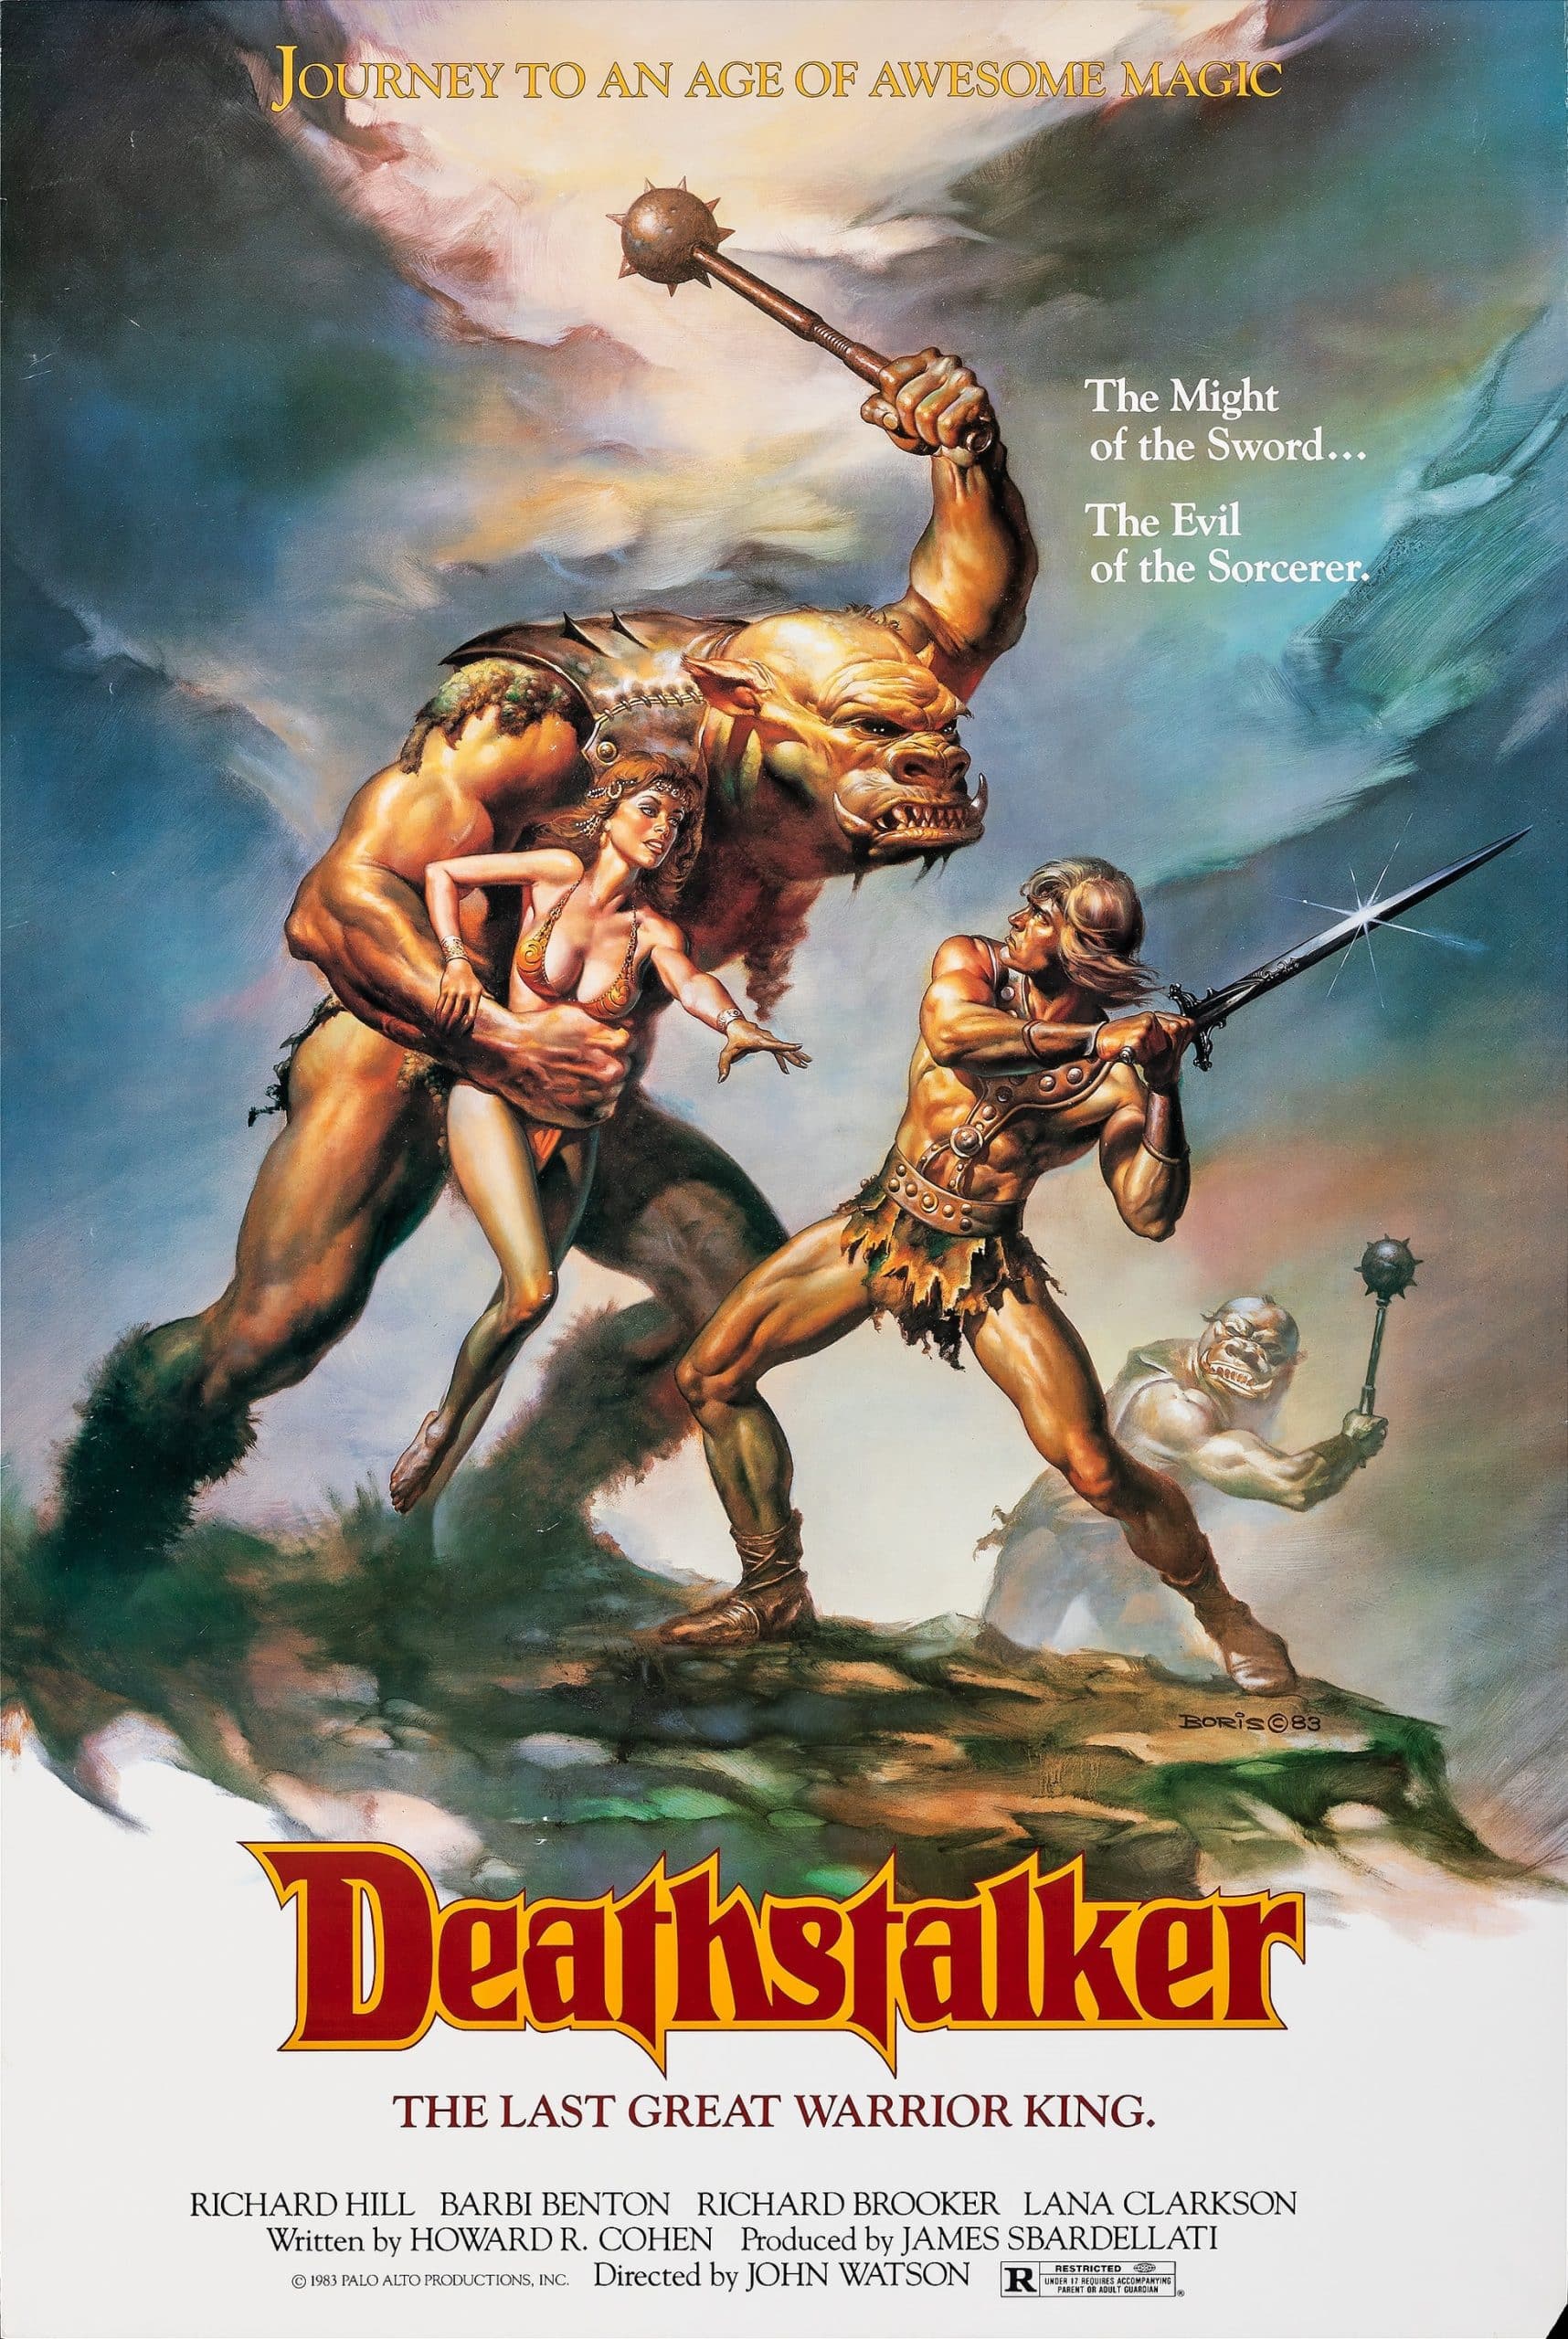 Deathstalker: Review